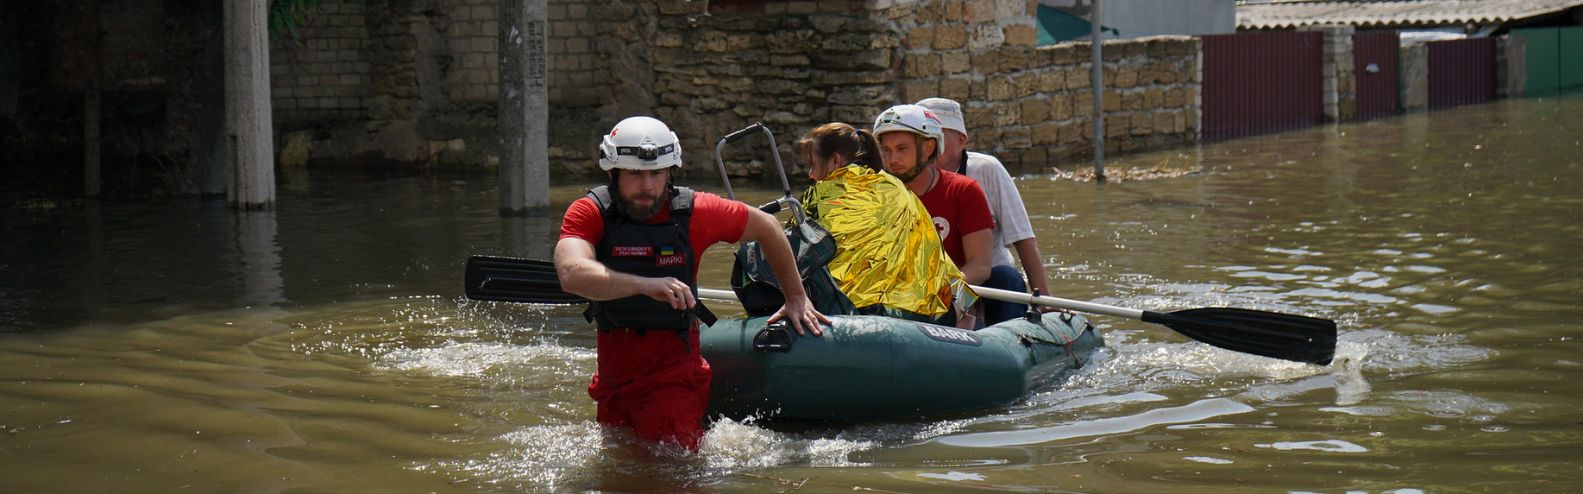 La Cruz Roja ucraniana continúa trabajando tras la destrucción de la presa de Nova Kakhovka para evacuar a la población